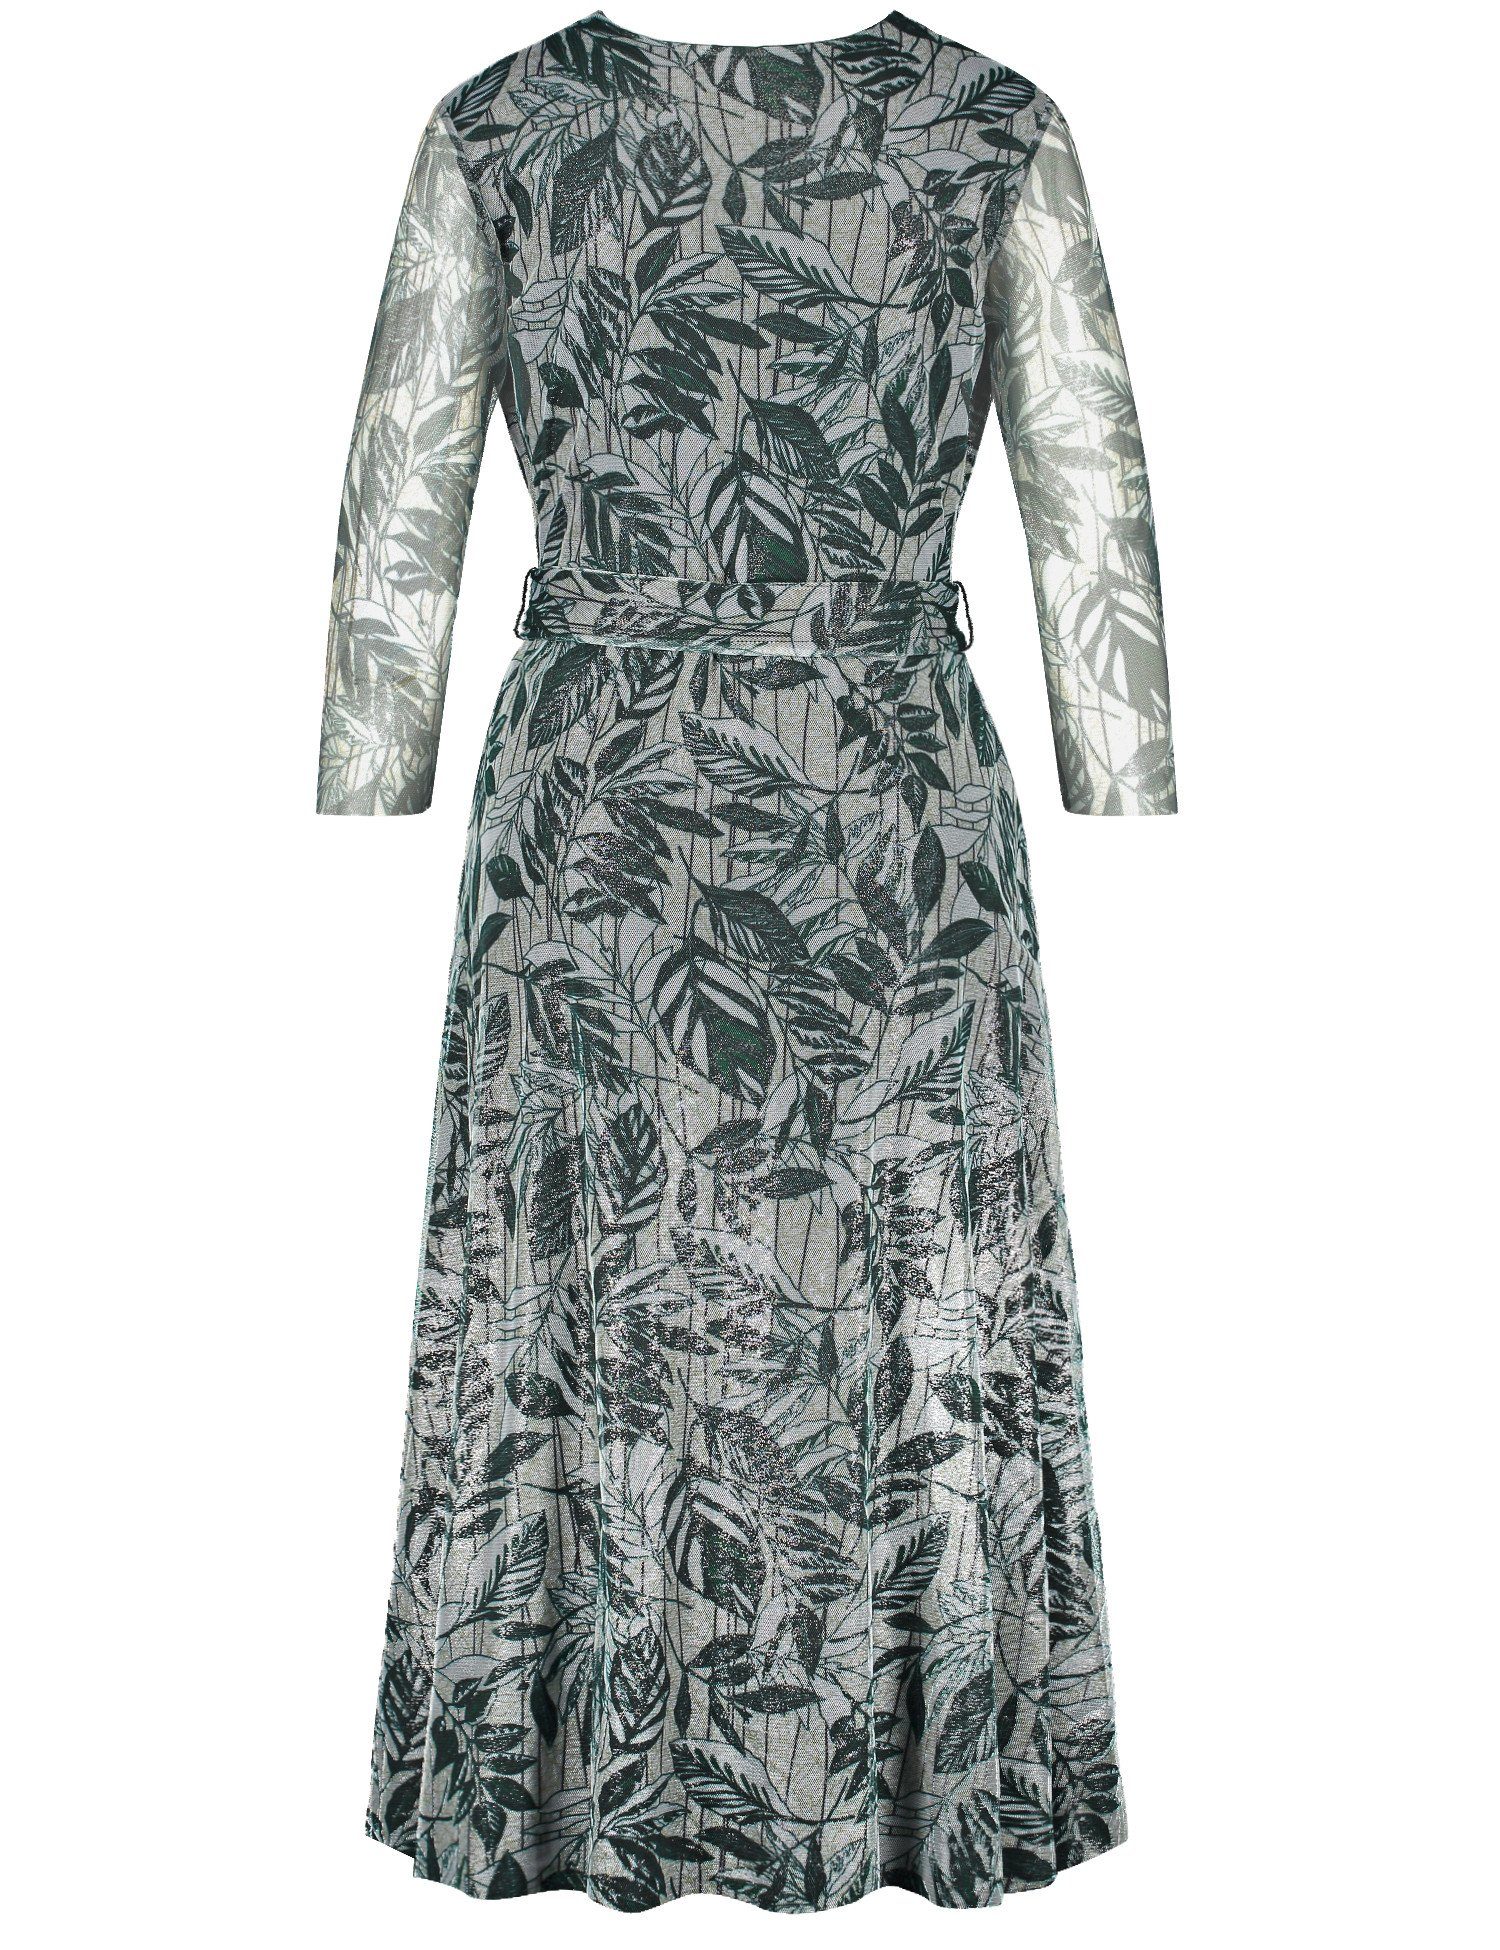 GERRY WEBER Midikleid Kleid mit Wickeleffekt